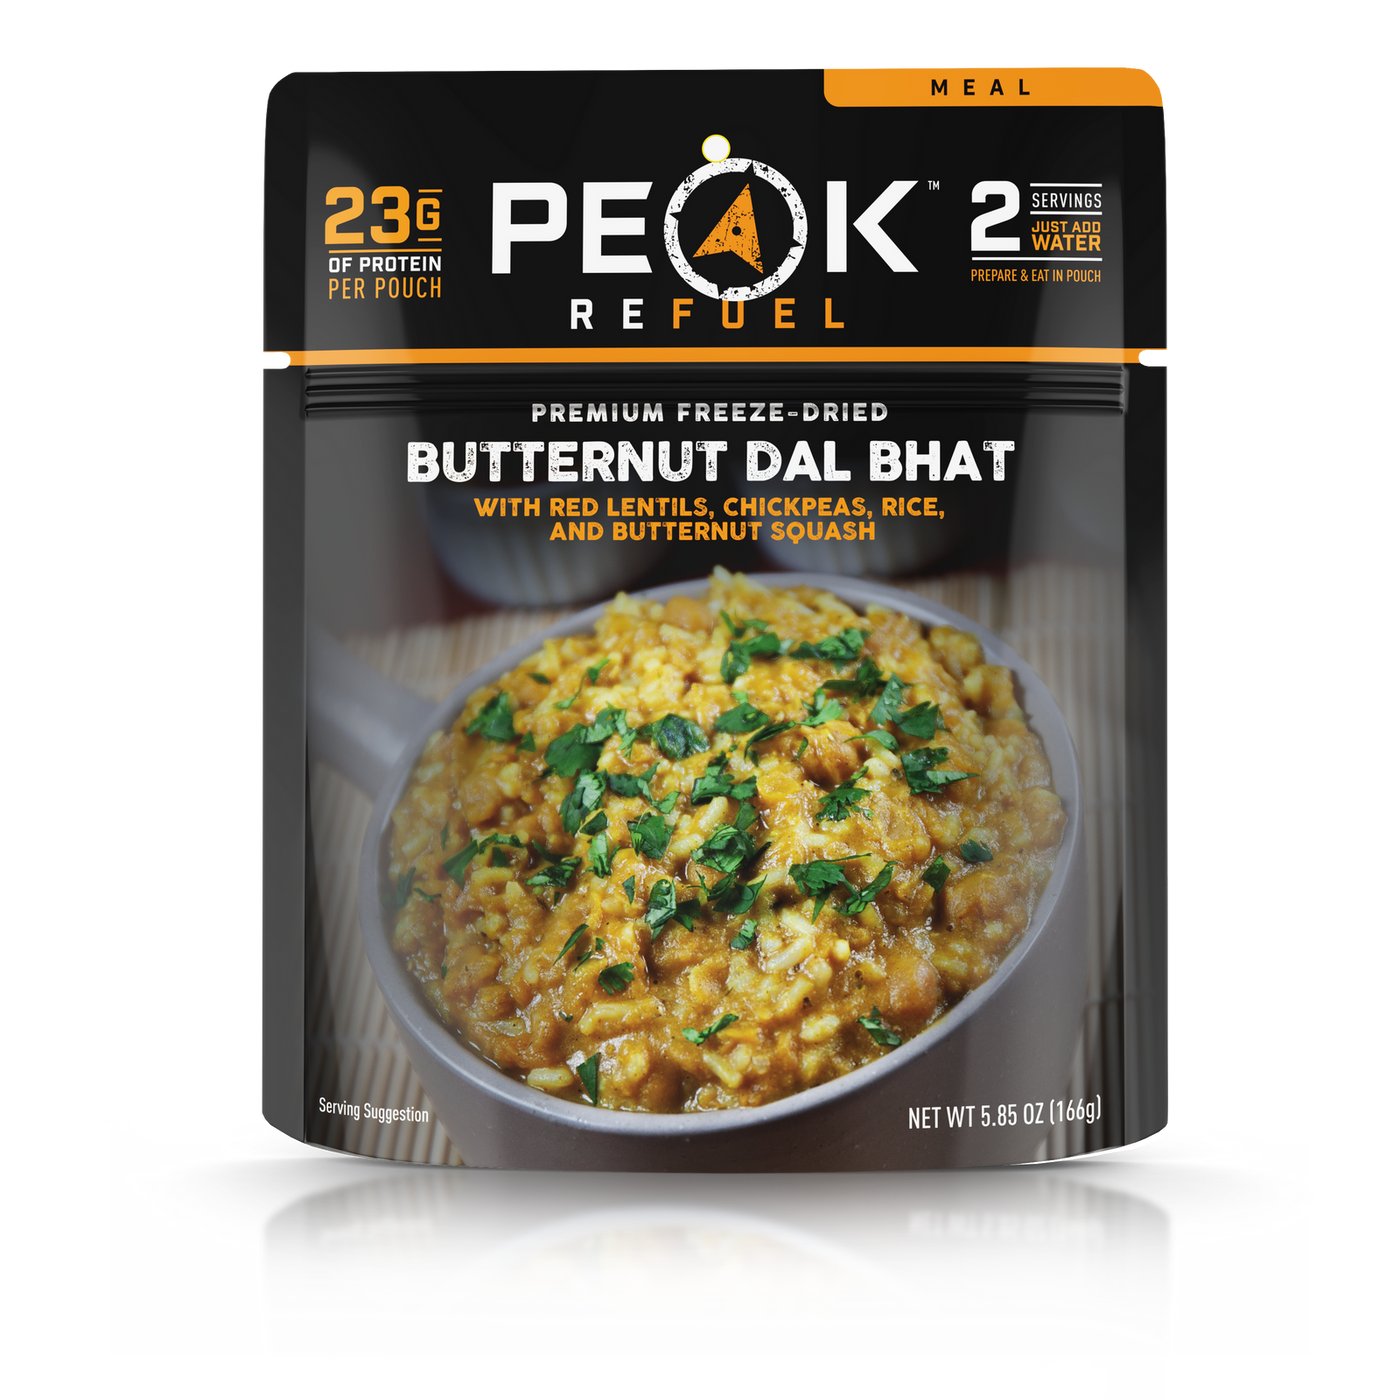 Peak Refuel, Butternut Dal Bhat Meal